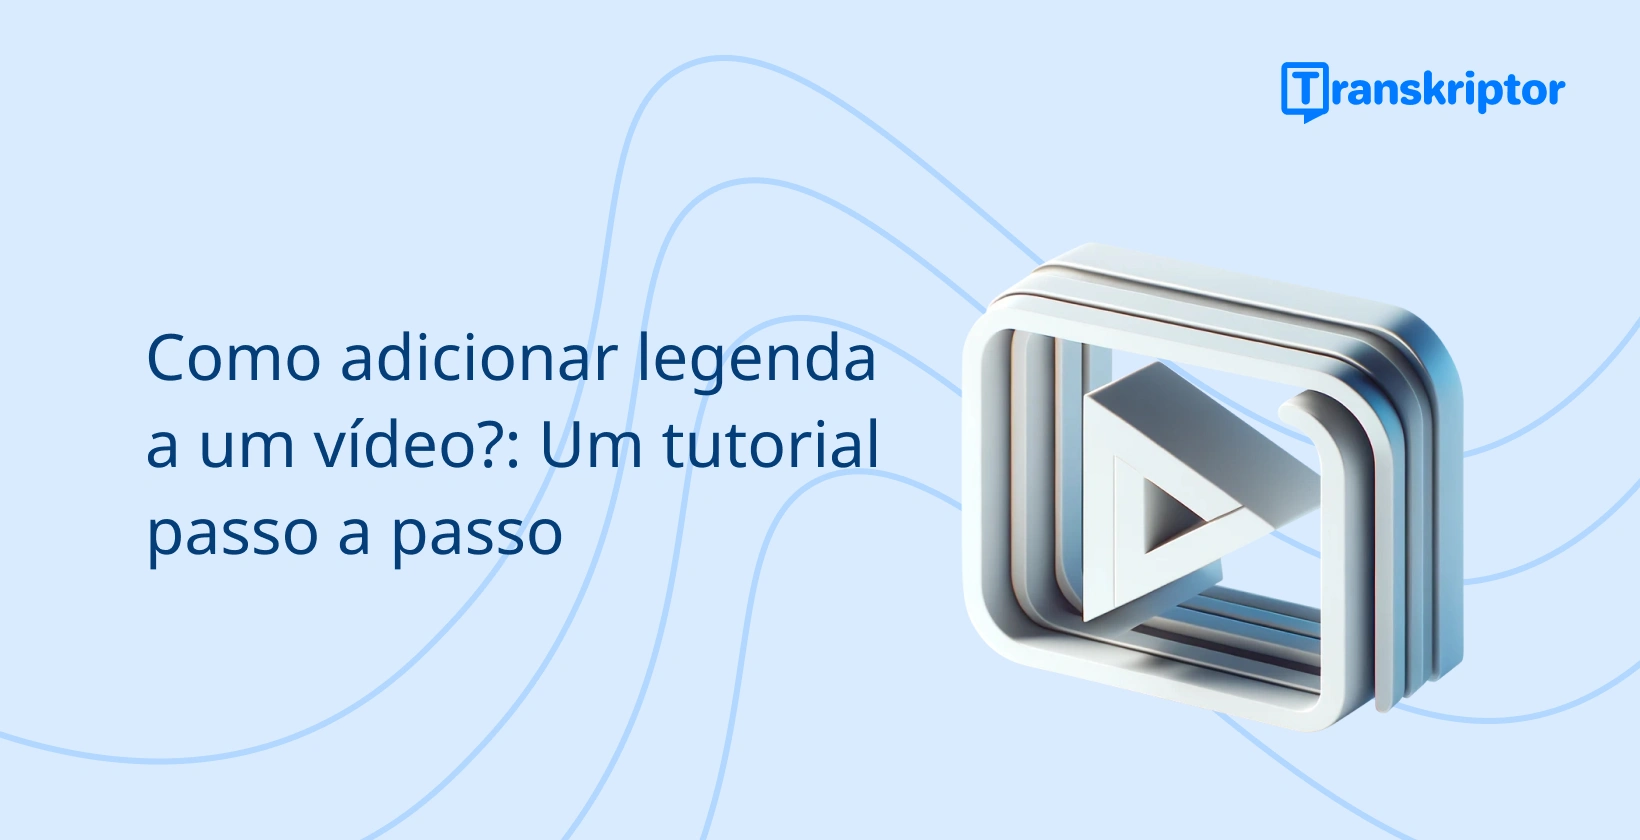 Banner tutorial passo a passo sobre como adicionar legendas a vídeos, com um ícone de botão de reprodução simbolizando a edição de vídeo.